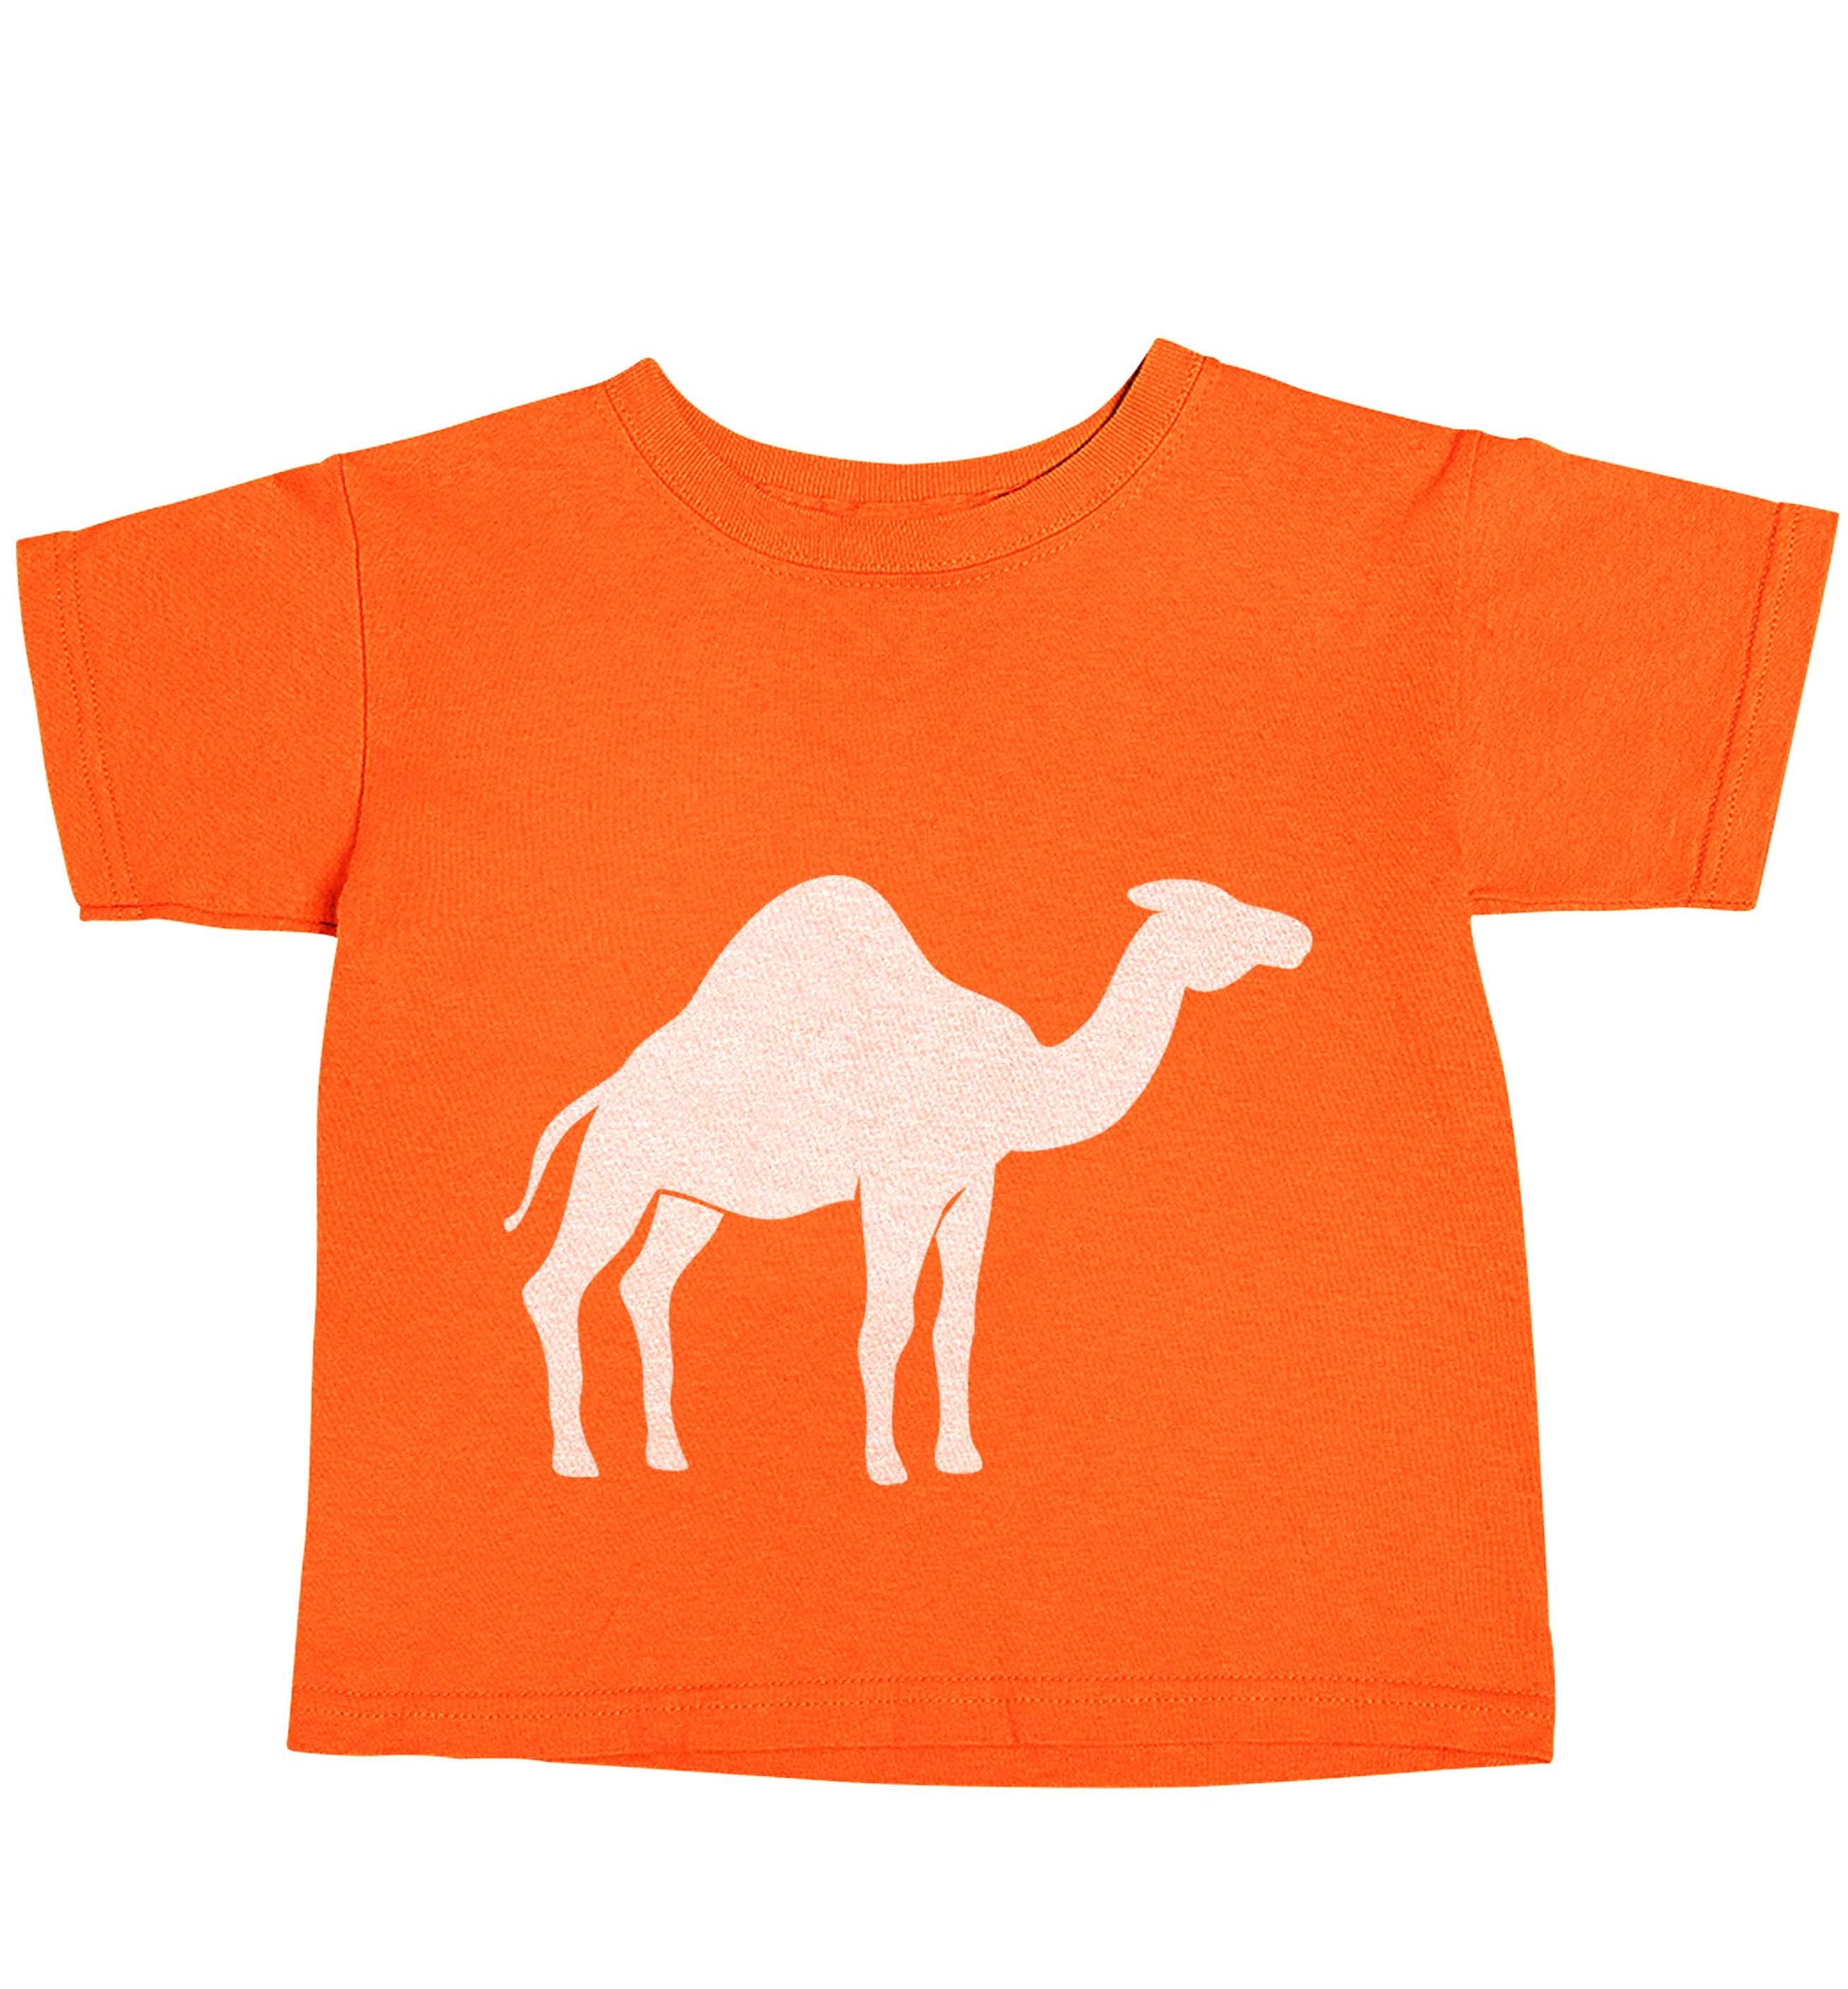 Blue camel orange baby toddler Tshirt 2 Years